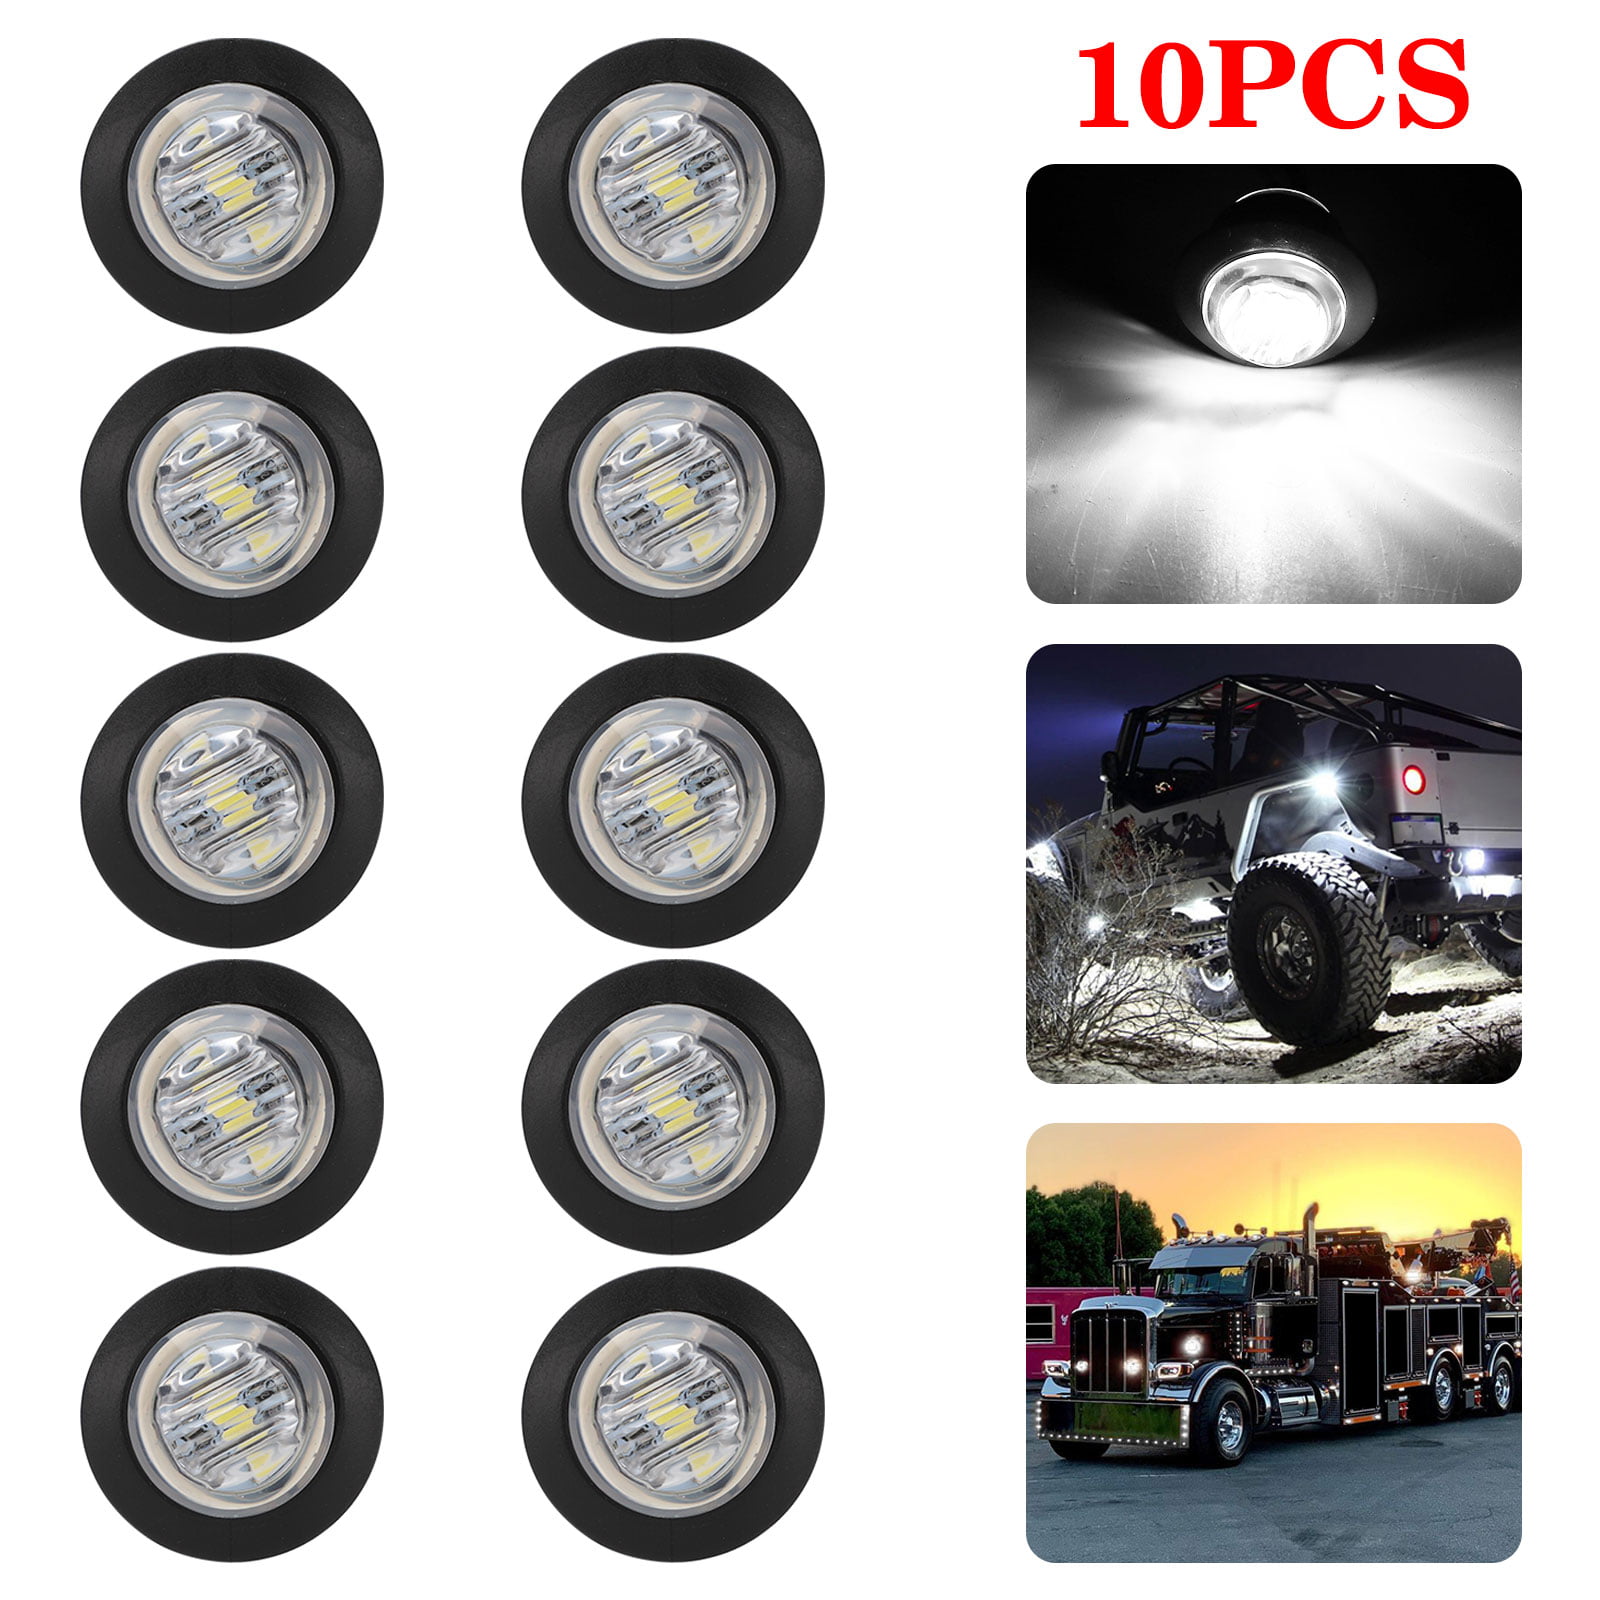 PSEQT 10 Pods LED Rock Lights Underbody Light for Ford Jeep Offroad Truck UTV ATV Boat White 